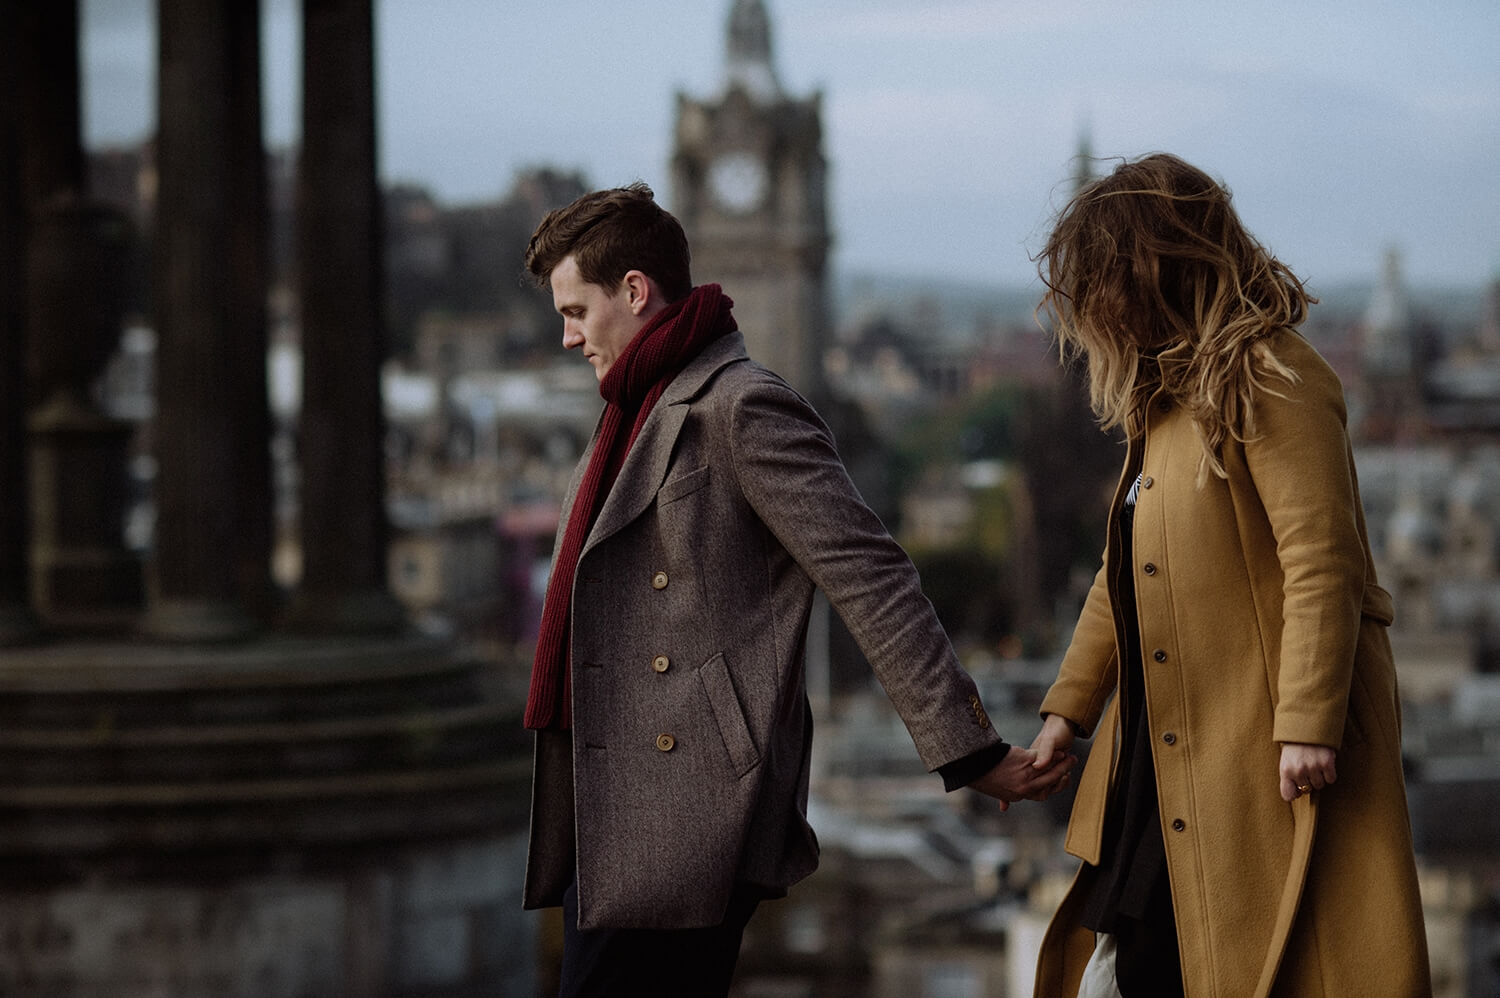 Couple photography suits Edinburgh.